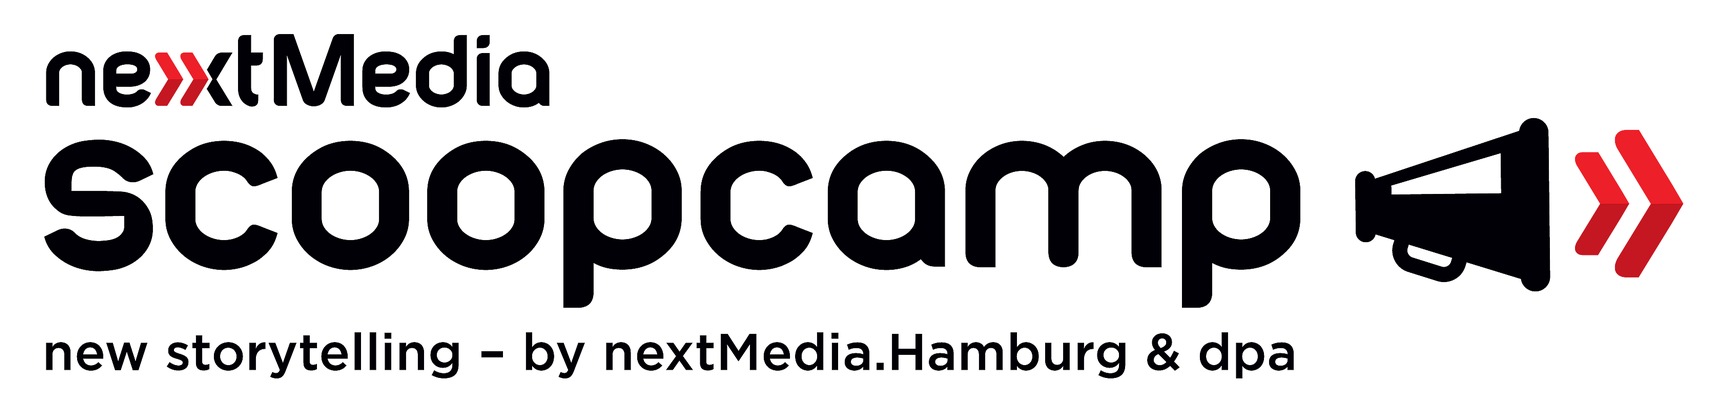 scoopcamp 2017 - Digitale Transformation auf internationalem Top-Niveau / Programm der Innovationskonferenz für Medien ist vollständig